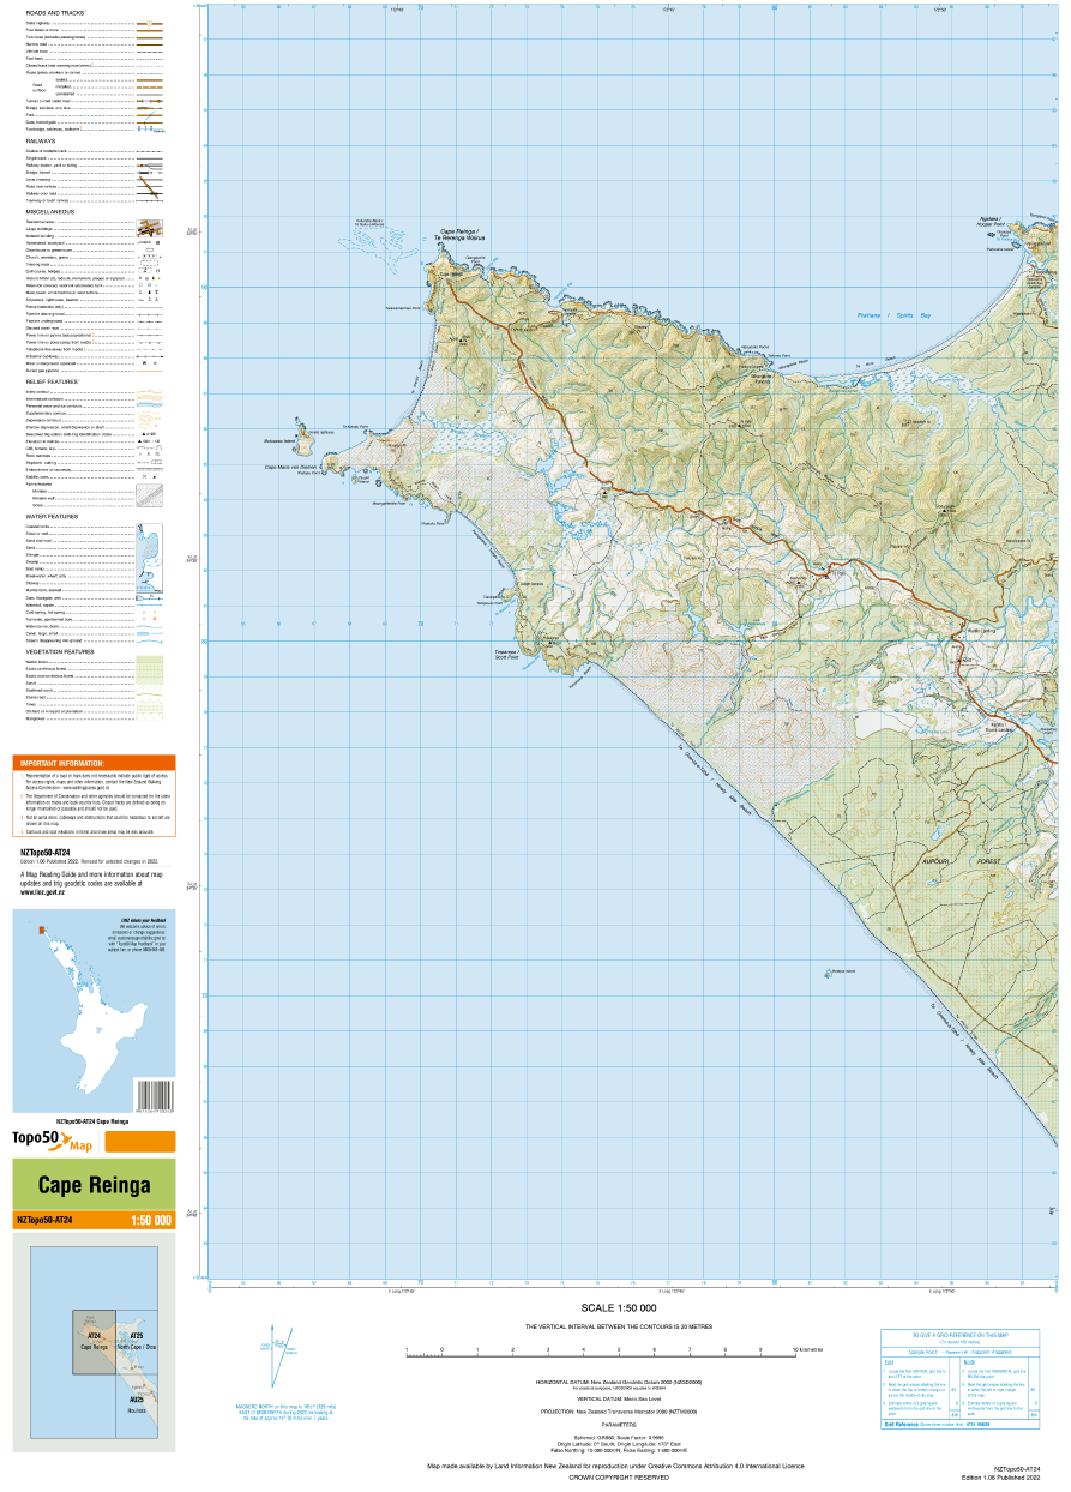 Topo map of Cape Reinga